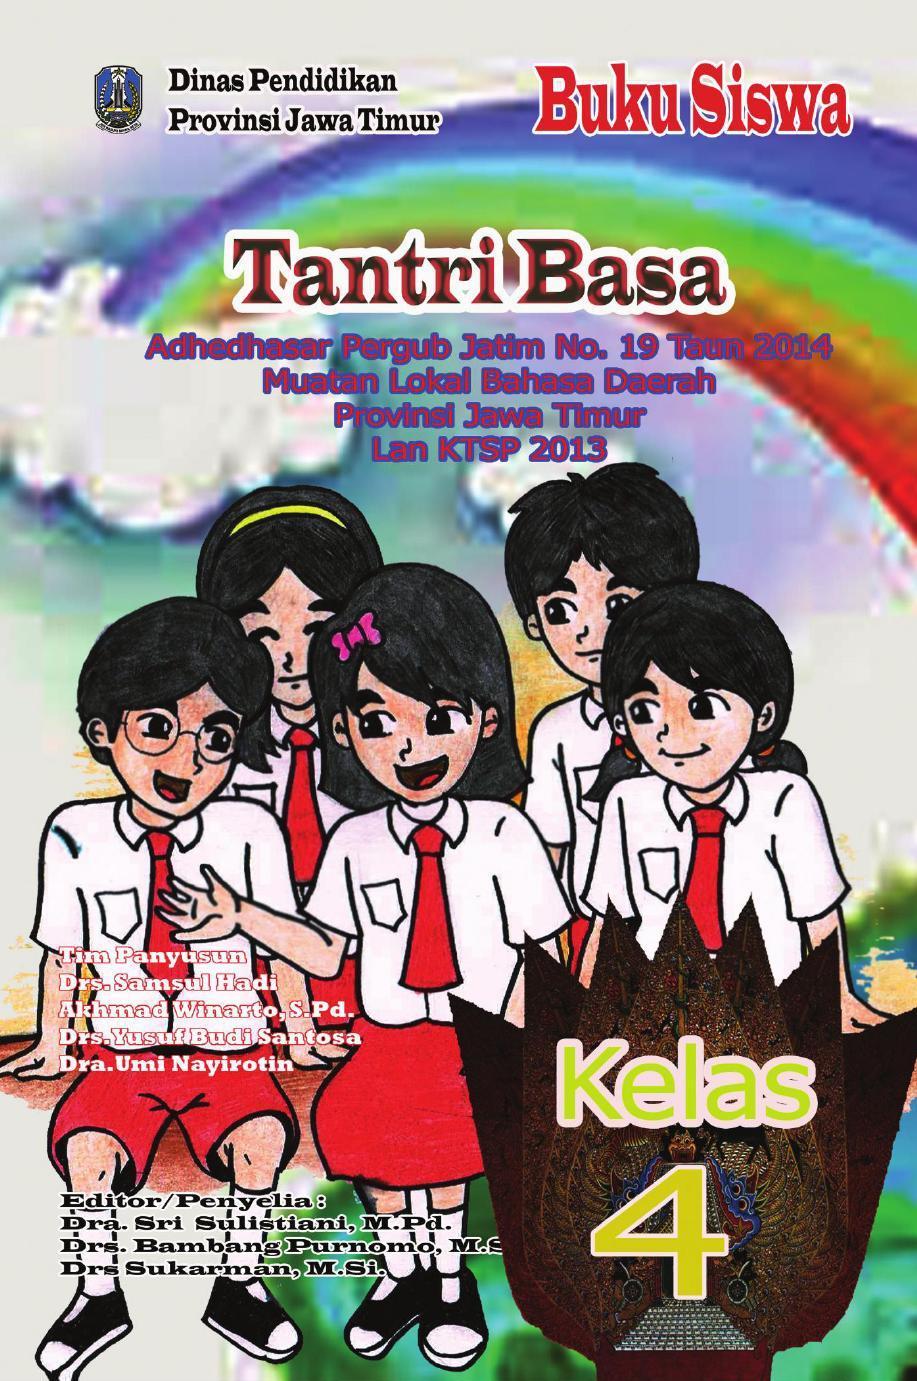 Buku Siswa Kelas 4 Bahasa Jawa Tantri Basa 2016 For Android Apk Download